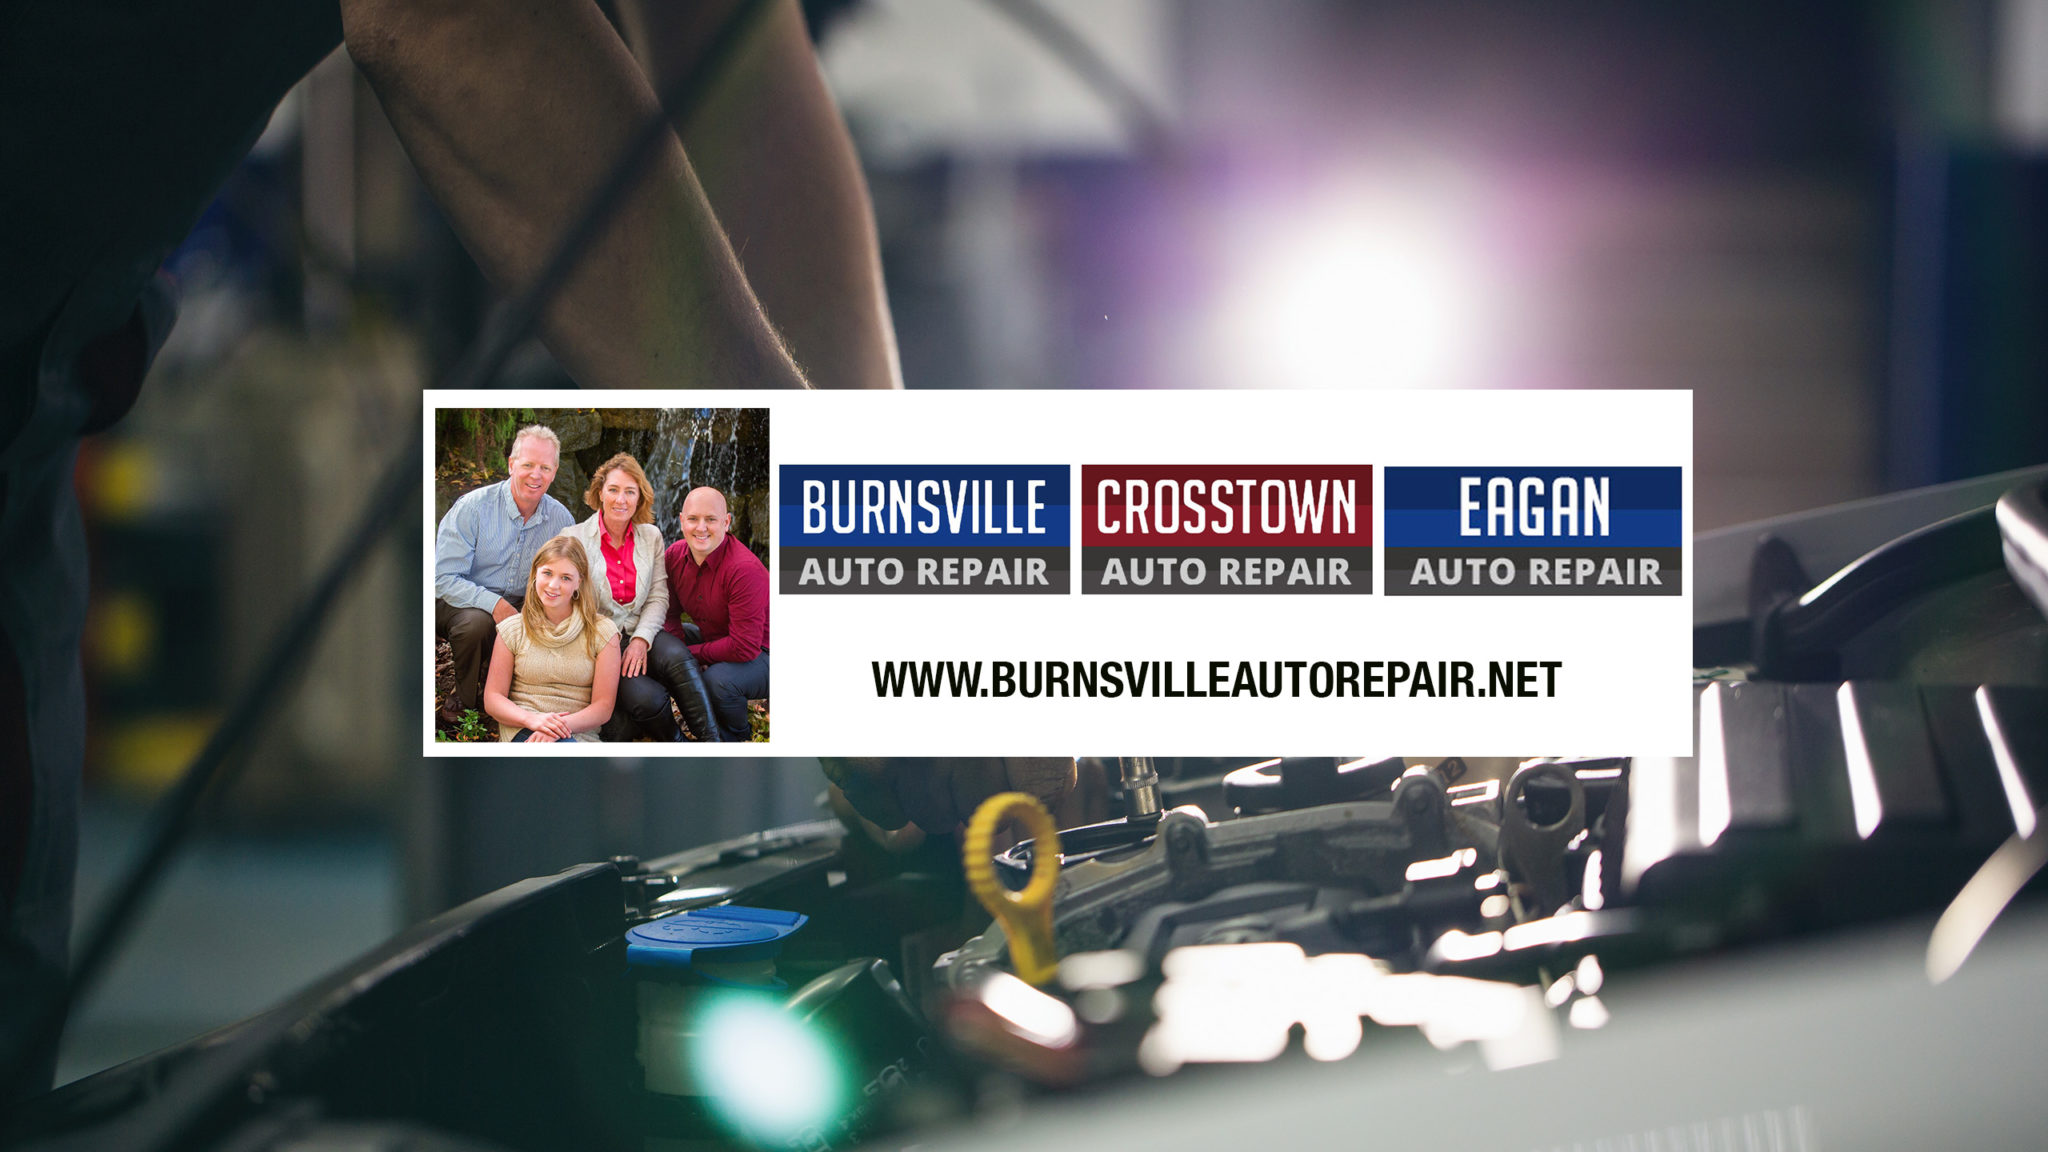 Burnsville Auto Repair Promotional Video